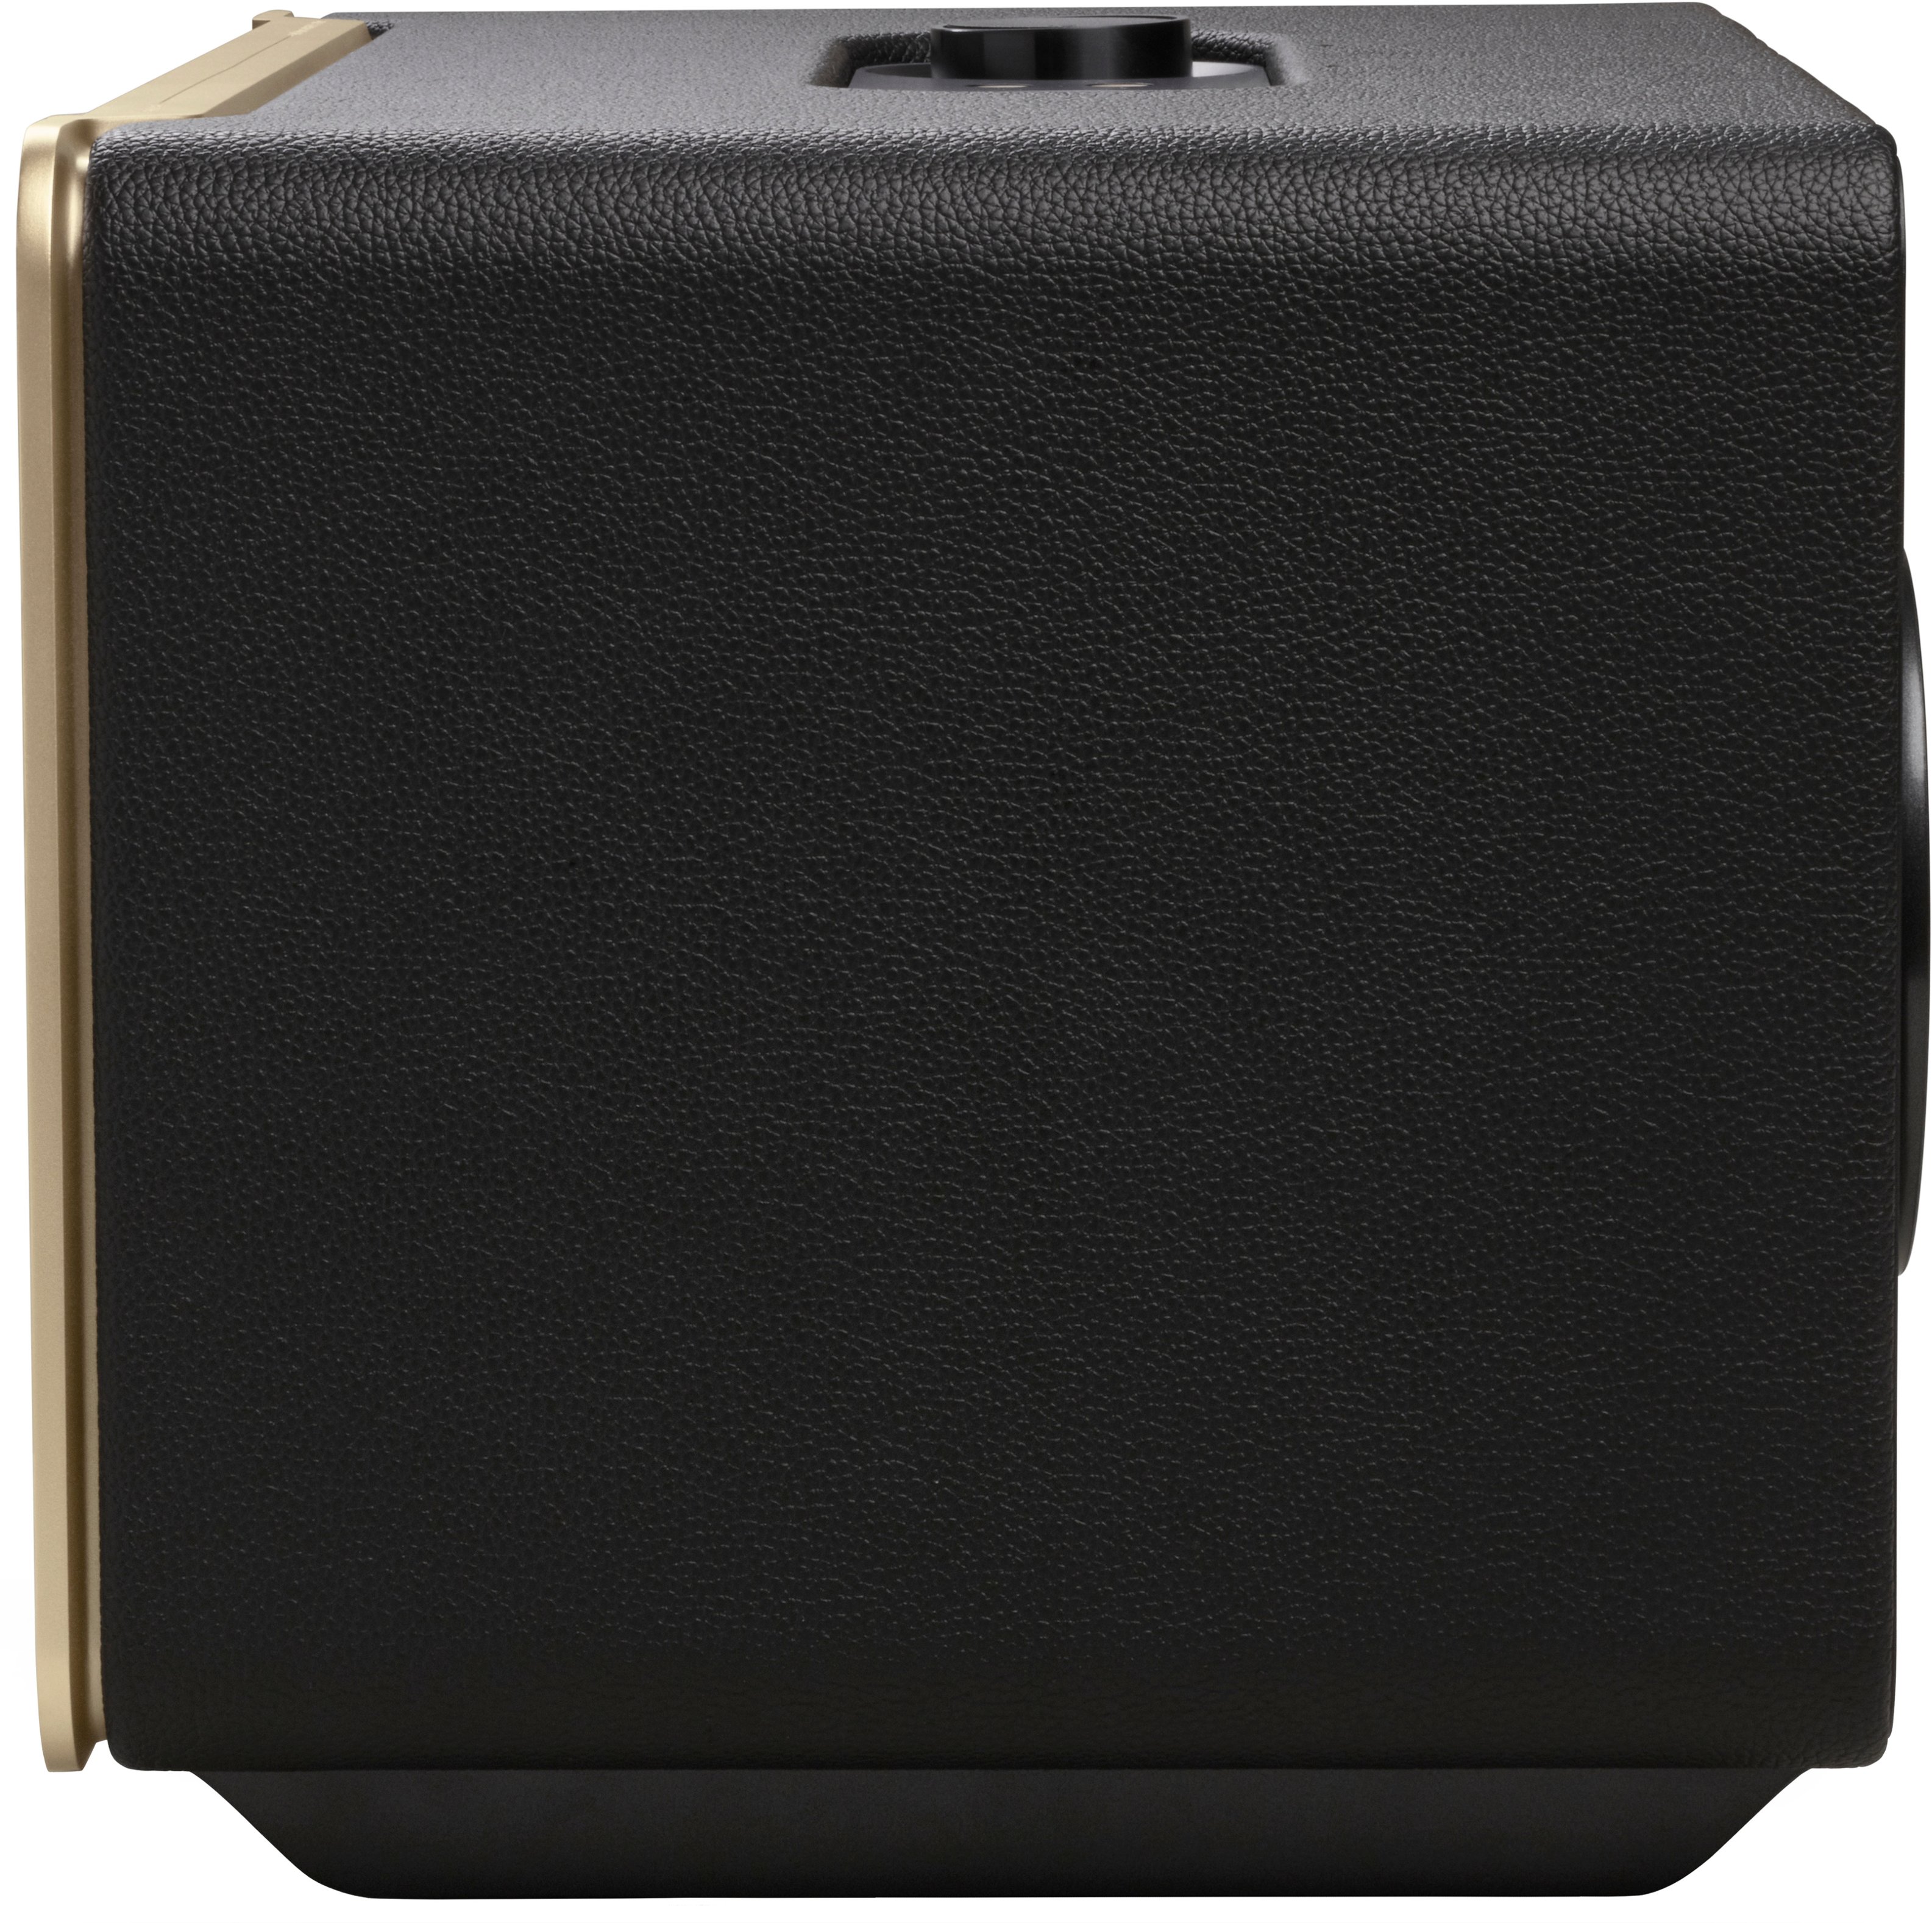 JBL Authentics 500 Smart Home Best JBLAUTH500BLKAM Black Buy - Speaker